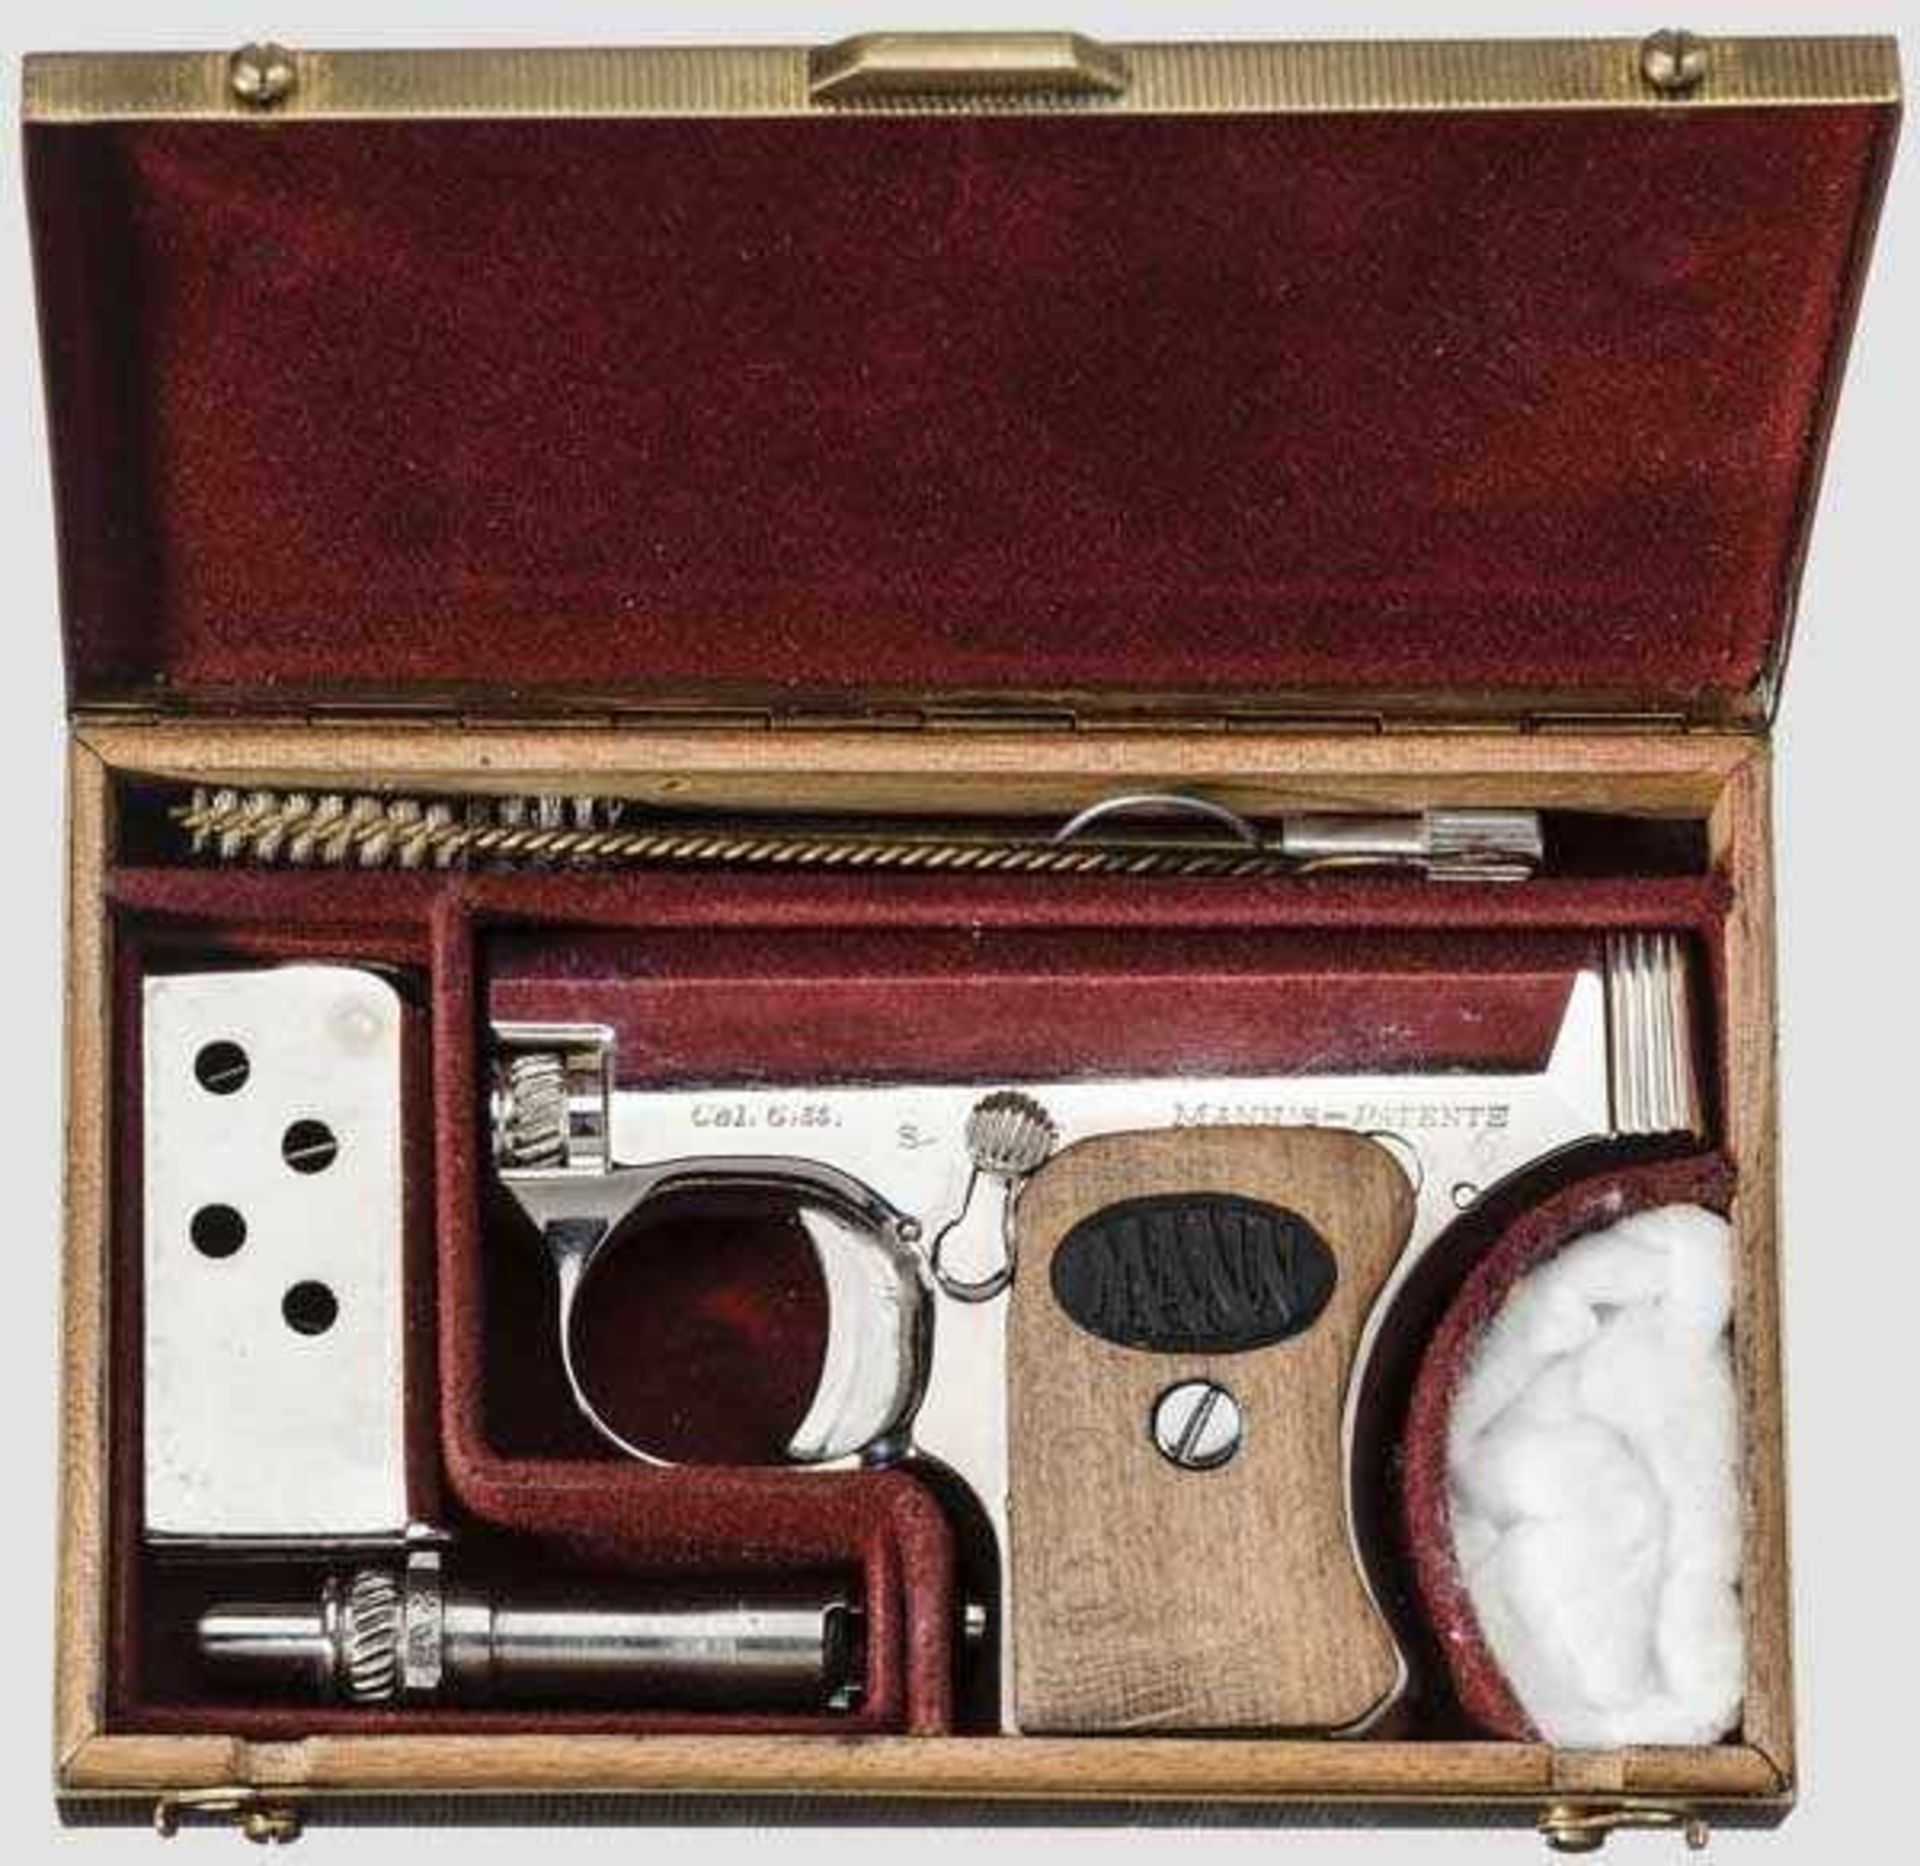 Pistole Mann, mit Wechsellauf, vernickelt, im Etui Kal. 6,35 mm, Nr. 57791. Lauf schwach matt, Länge